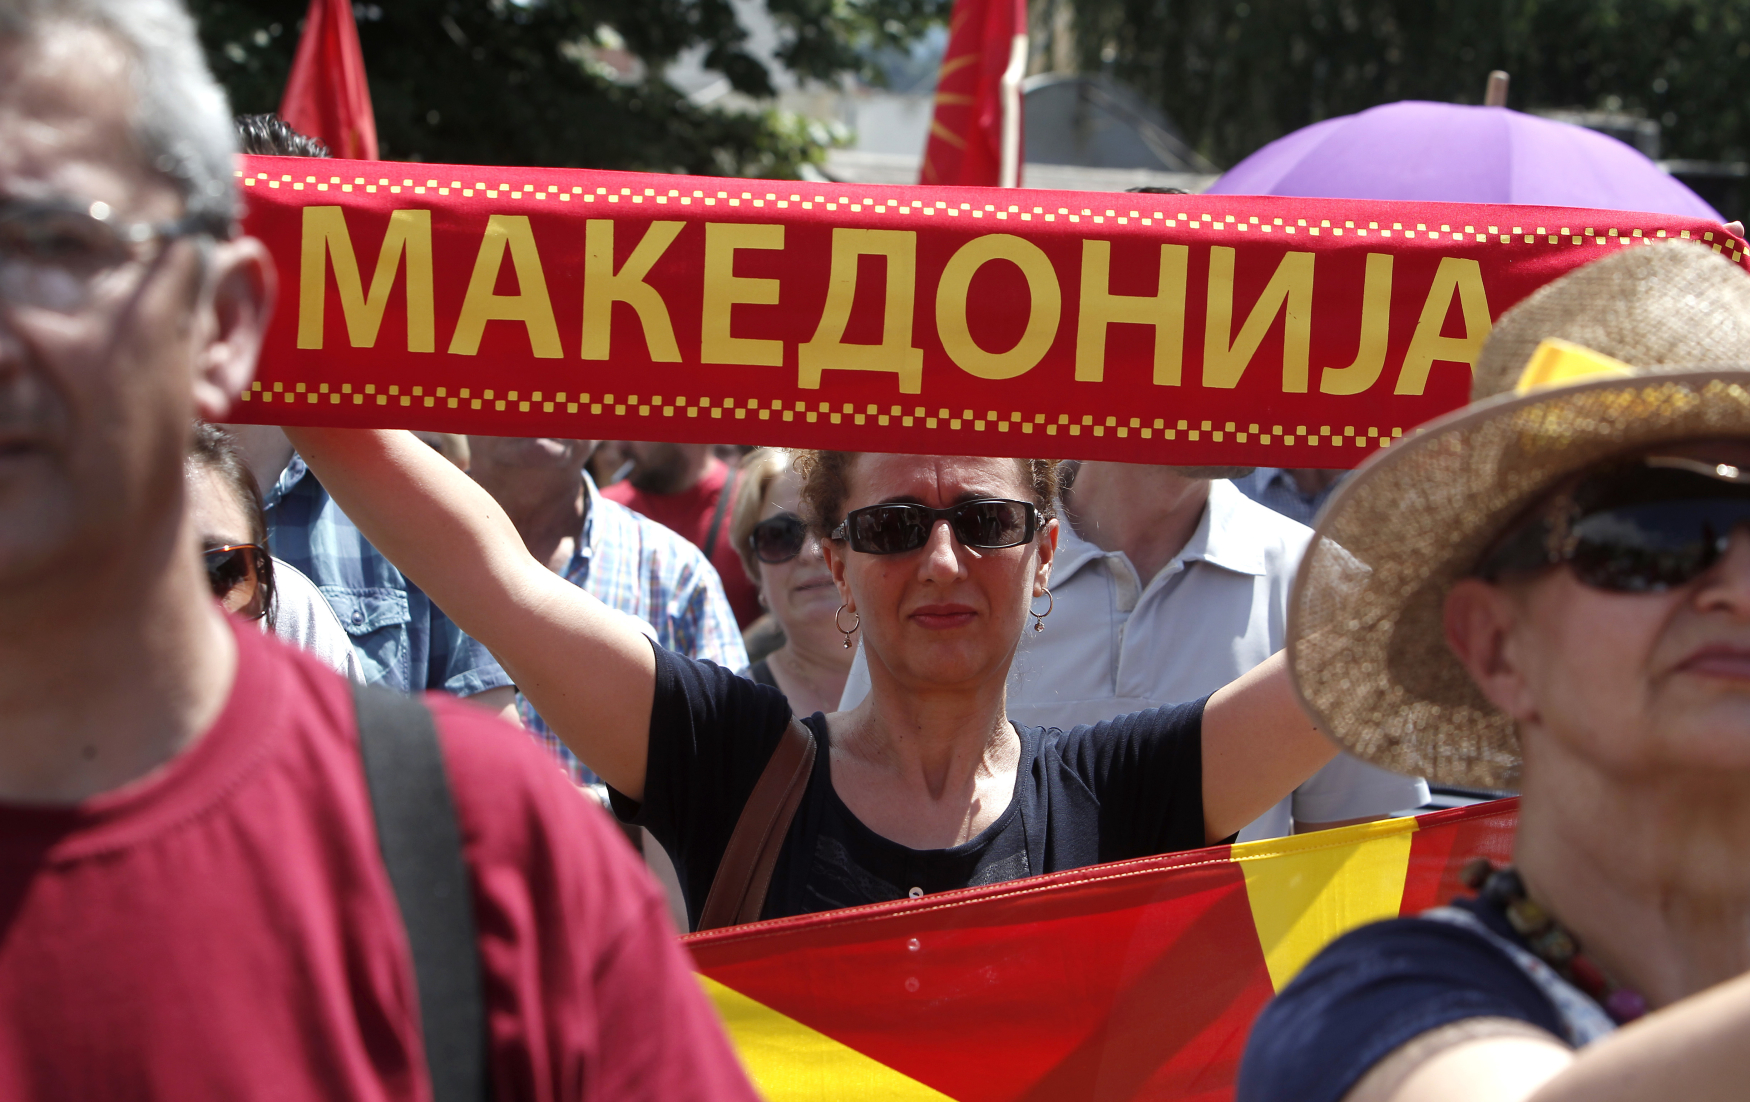 Podpis dohody mezi Řeckem a Bývalou jugoslávskou republikou Makedonií o uspořádání vzájemných vztahů možná ukončí dlouhý spor